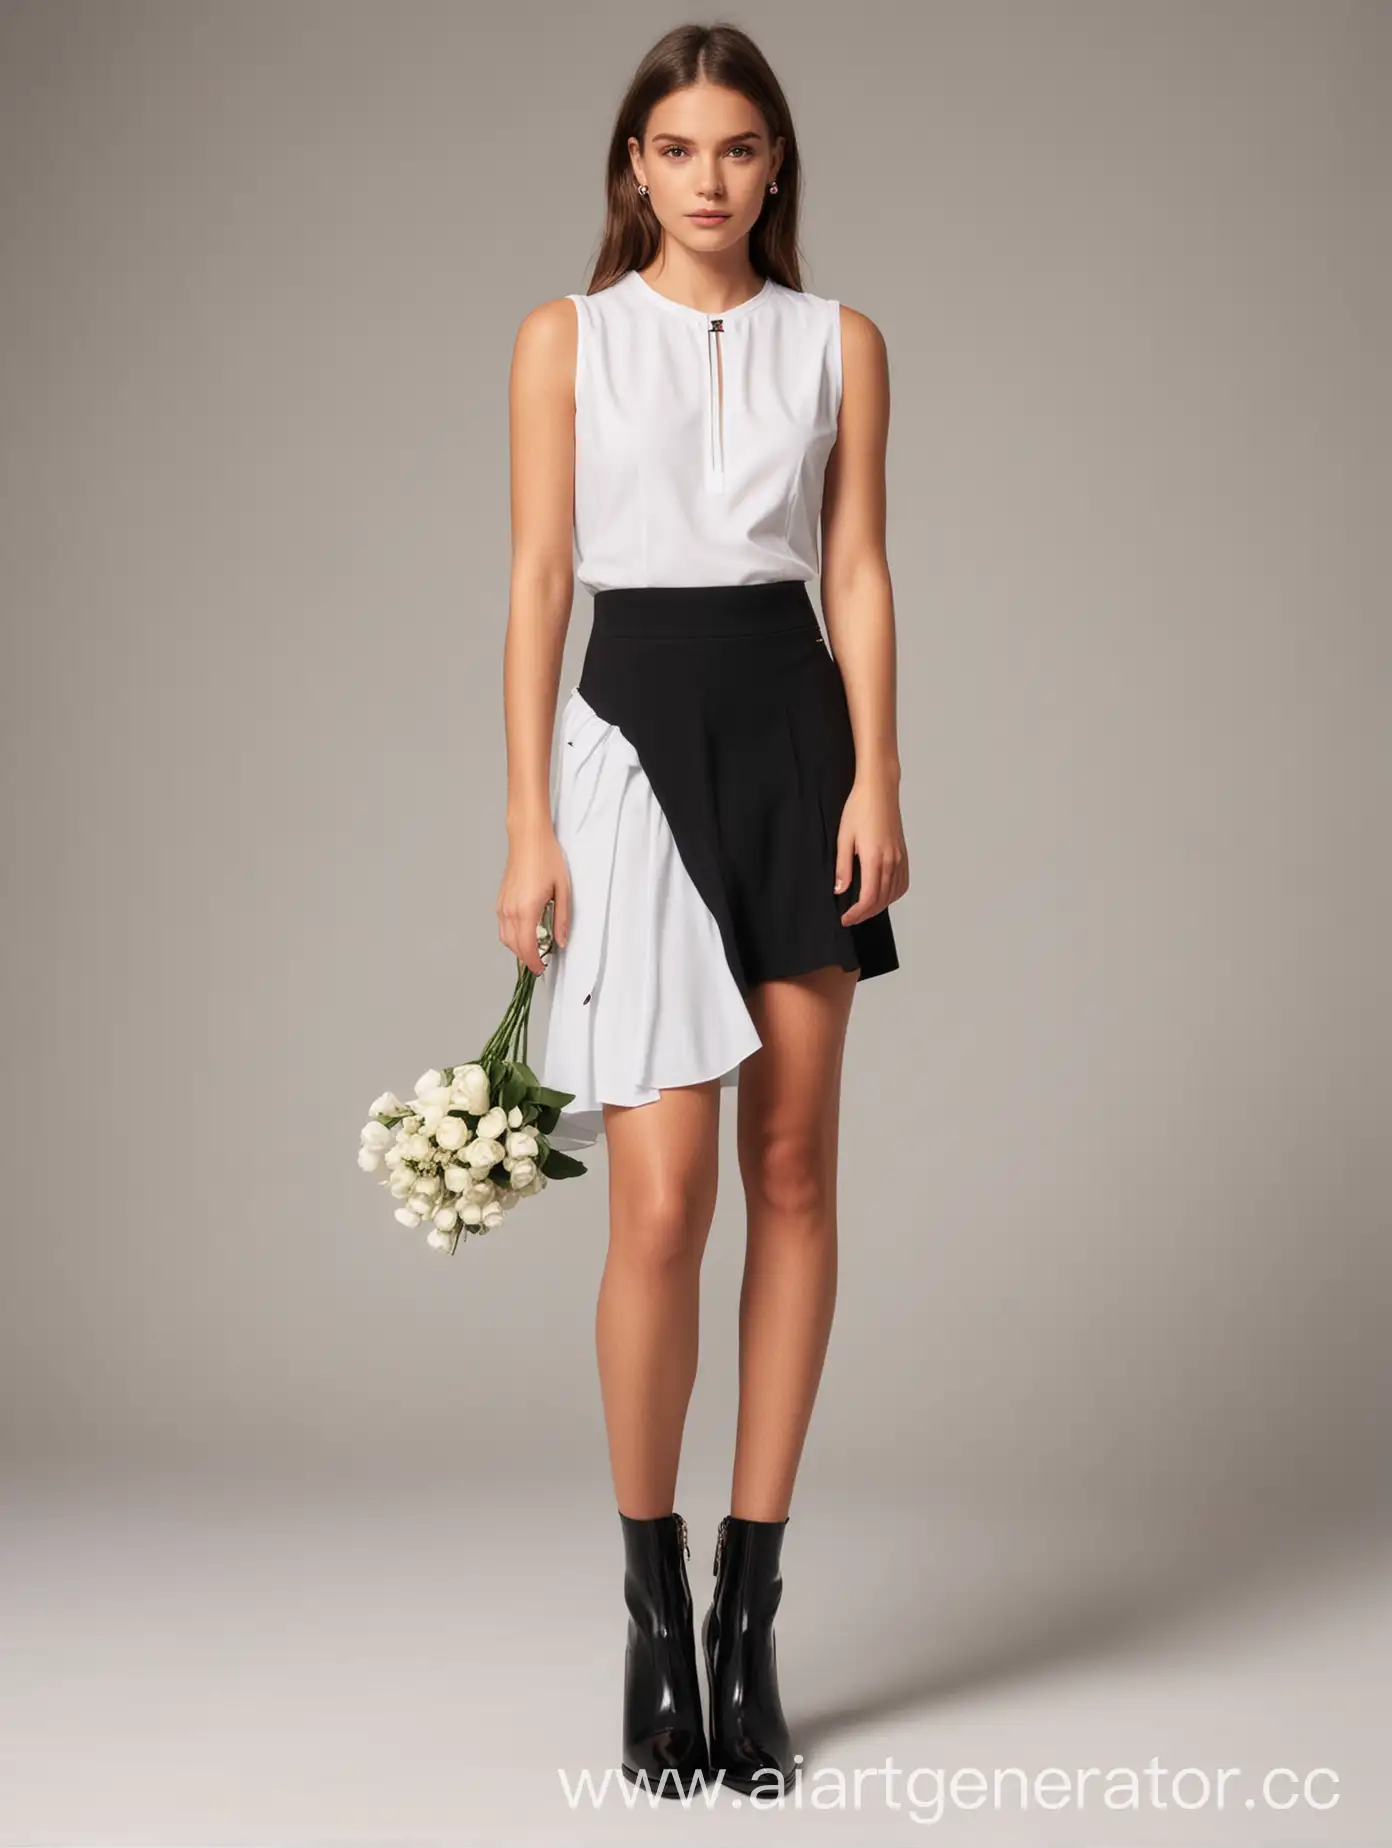 Официальный образ для девушки белый верх черный низ для того, чтобы возложить цветы у траурного мемориала, в стиле Tommy Hilfiger 